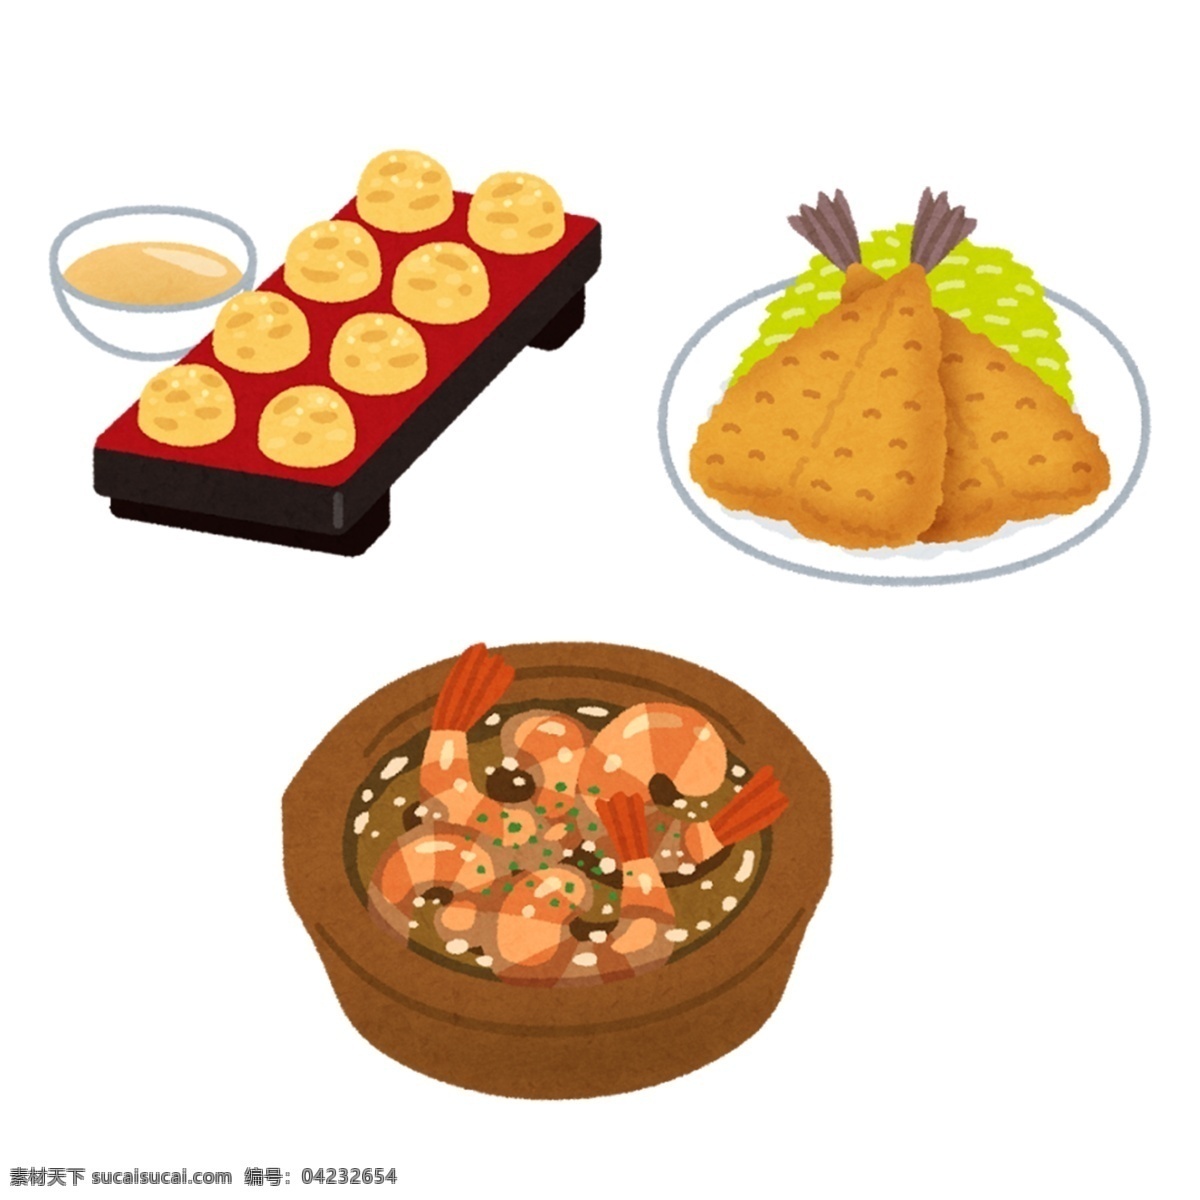 日本 水彩 手绘 食物 图标 设计素材 水彩手绘 食物图标